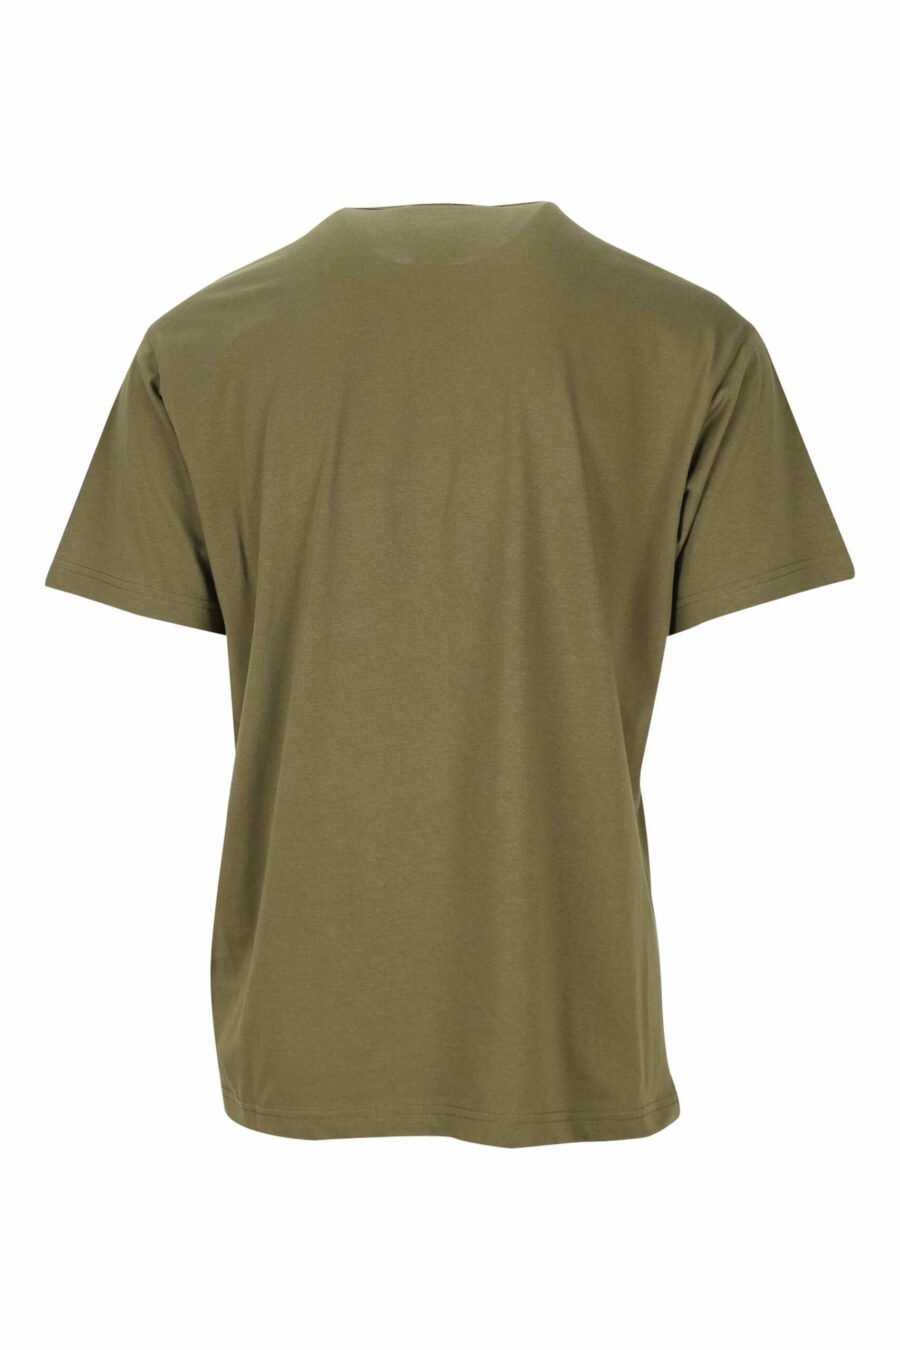 T-shirt vert militaire avec maxilogue orange classique - 8052019468090 1 scaled